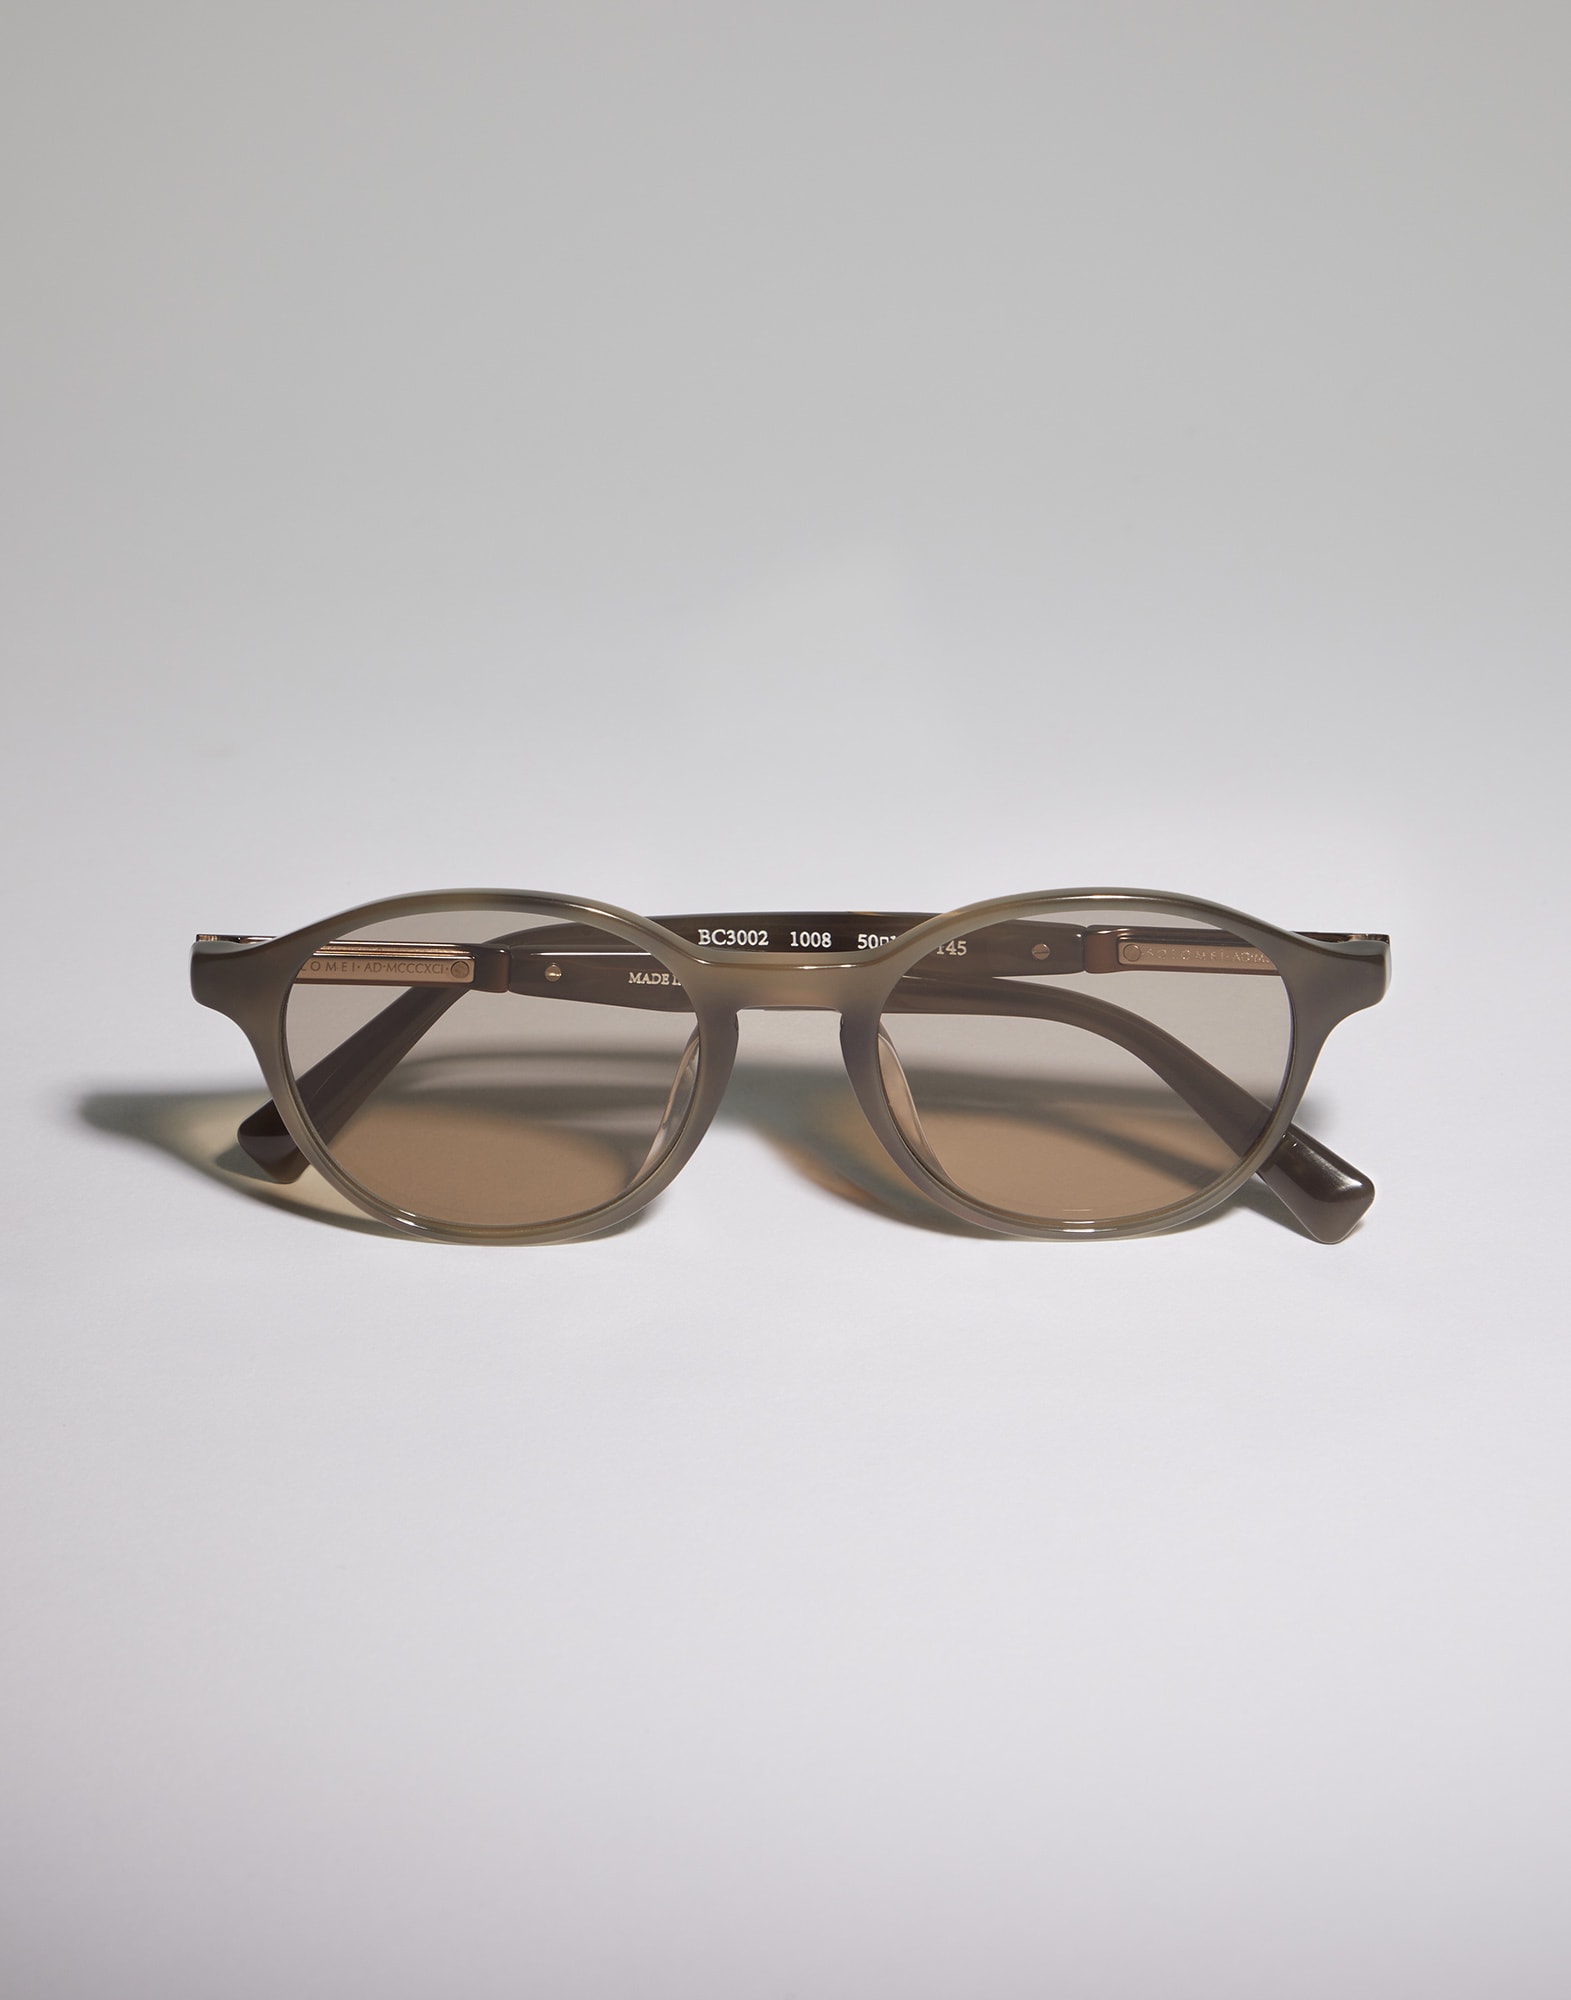 Round glasses Havana Taupe Eyewear -
                        Brunello Cucinelli
                    